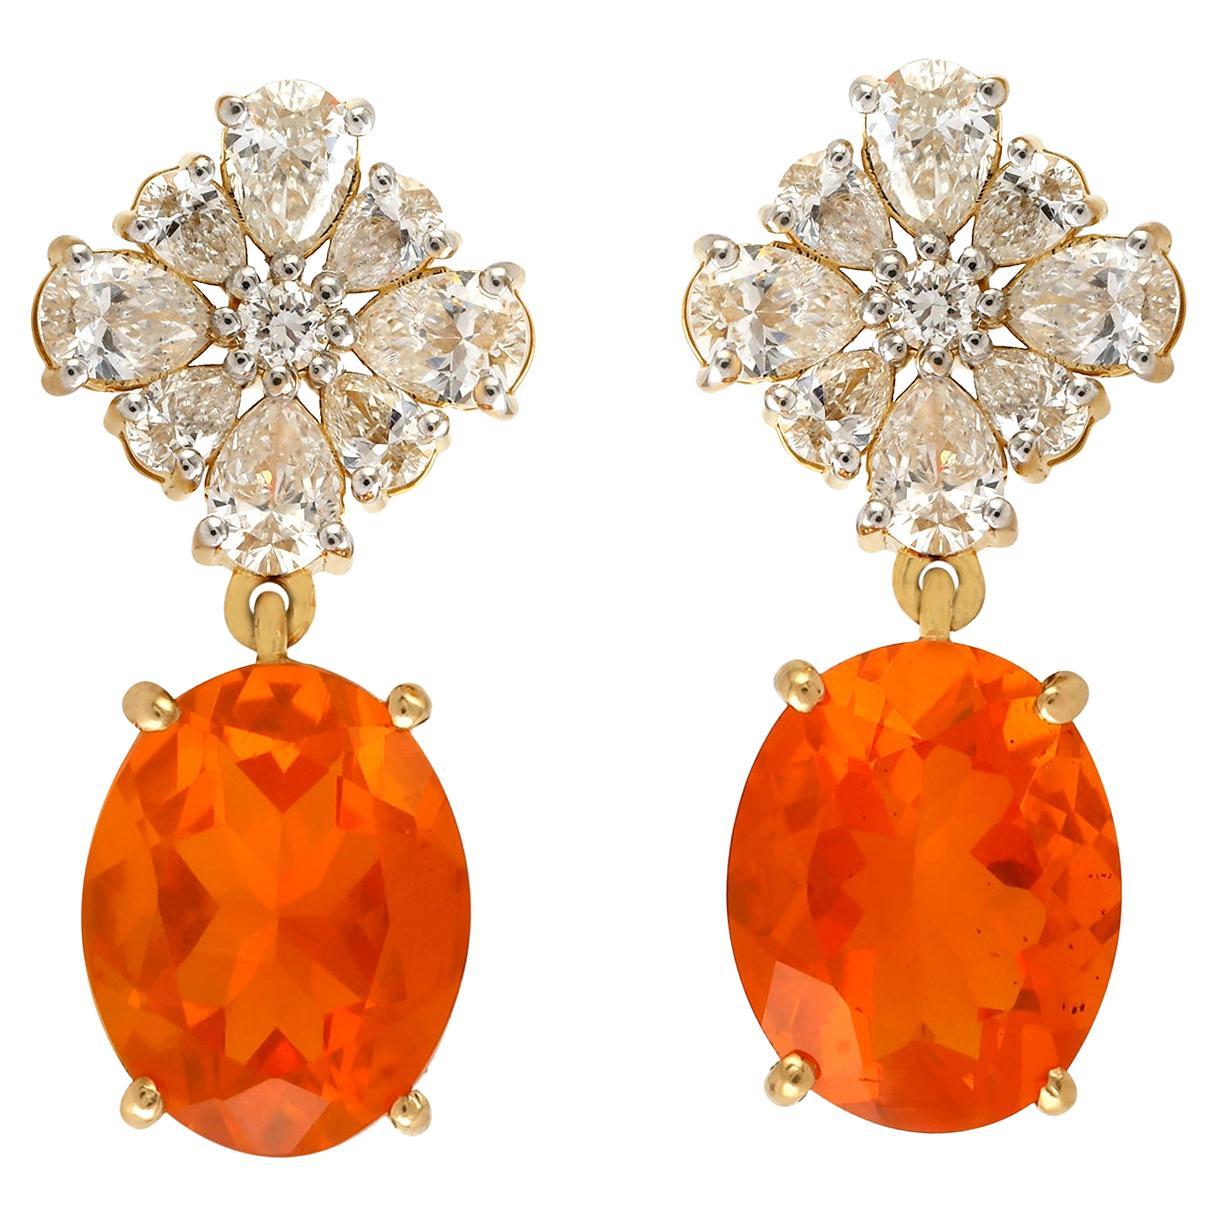 Pendants d'oreilles en or jaune 18 carats avec opale de feu de forme ovale accentuée de diamants